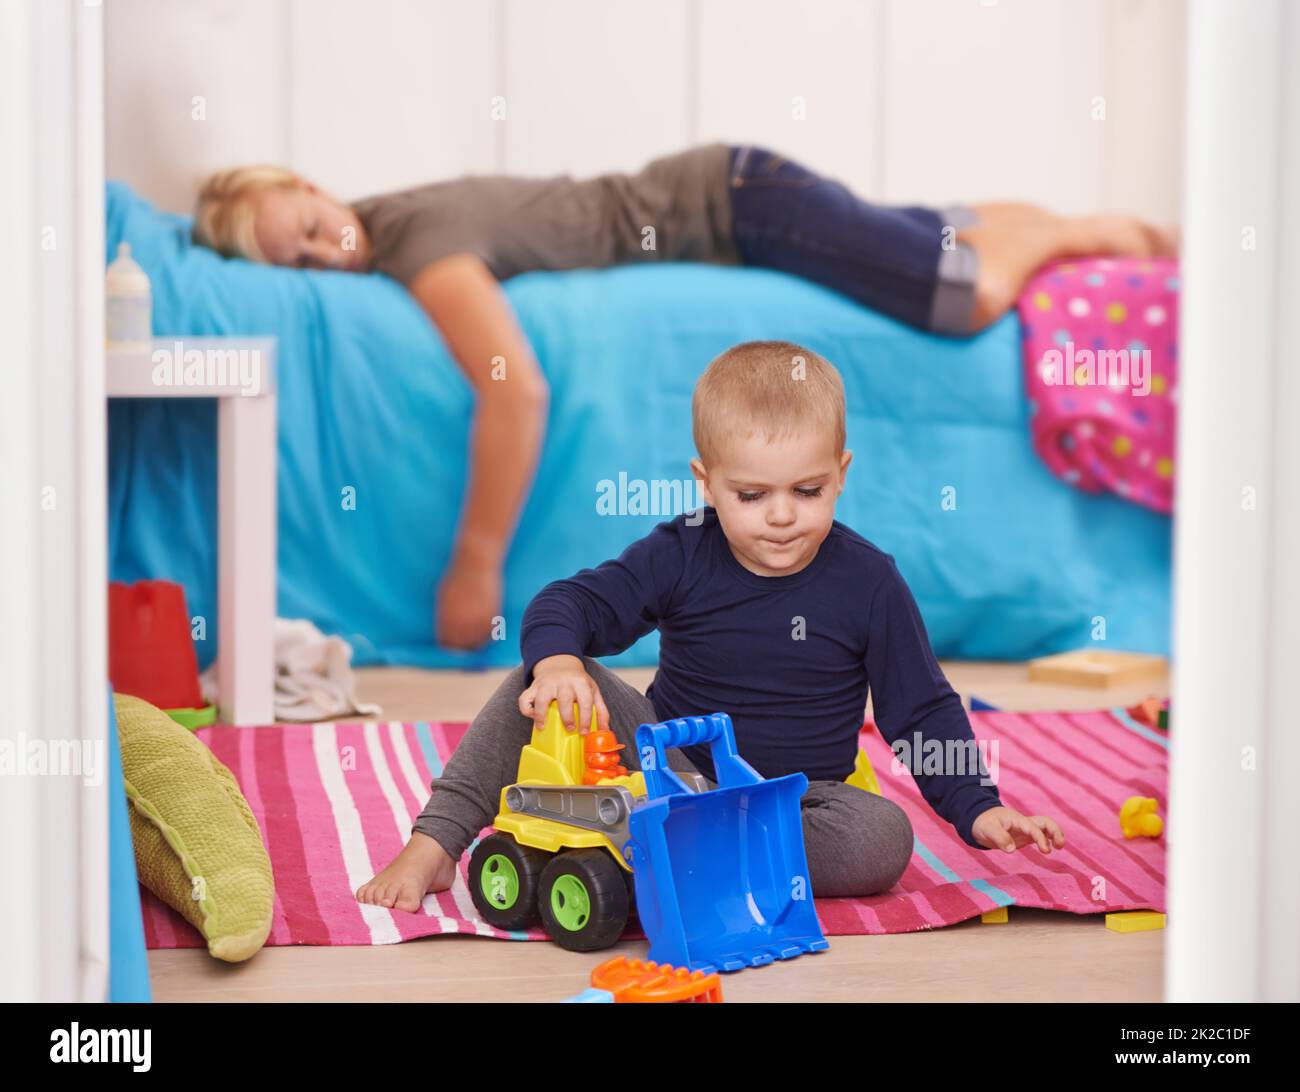 Elternschaft ist anstrengend. Ein Kleinkind spielt mit seinen Spielsachen, während seine Mutter auf seinem Bett nippt. Stockfoto